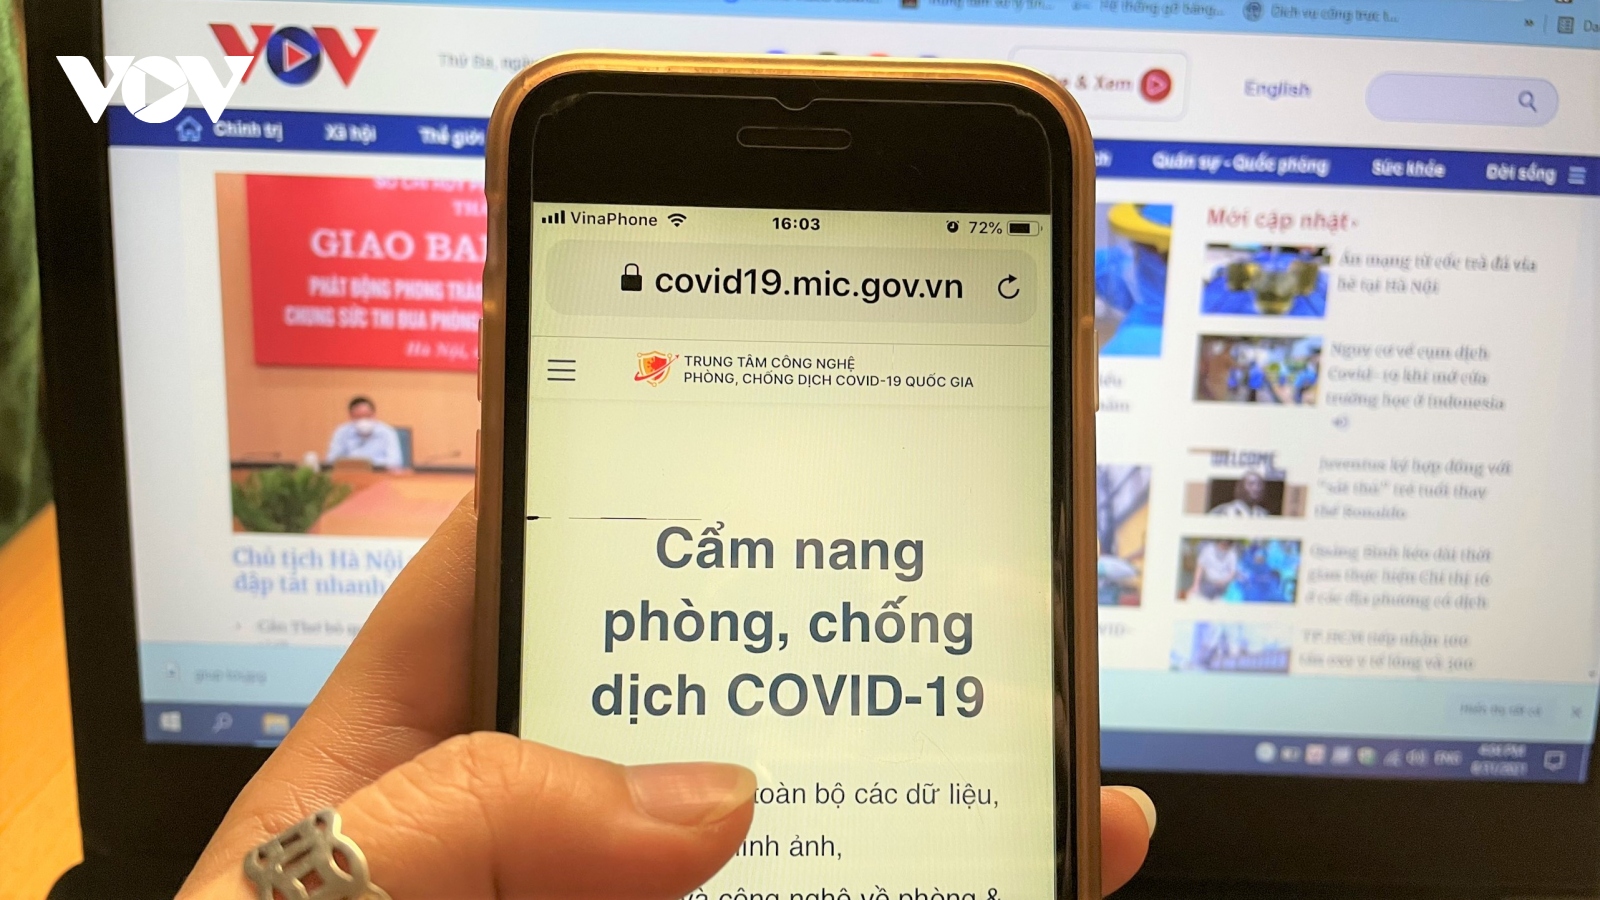 "Giúp tôi" - ứng dụng kết nối tư vẫn miễn phí cho người dân trong dịch Covid-19